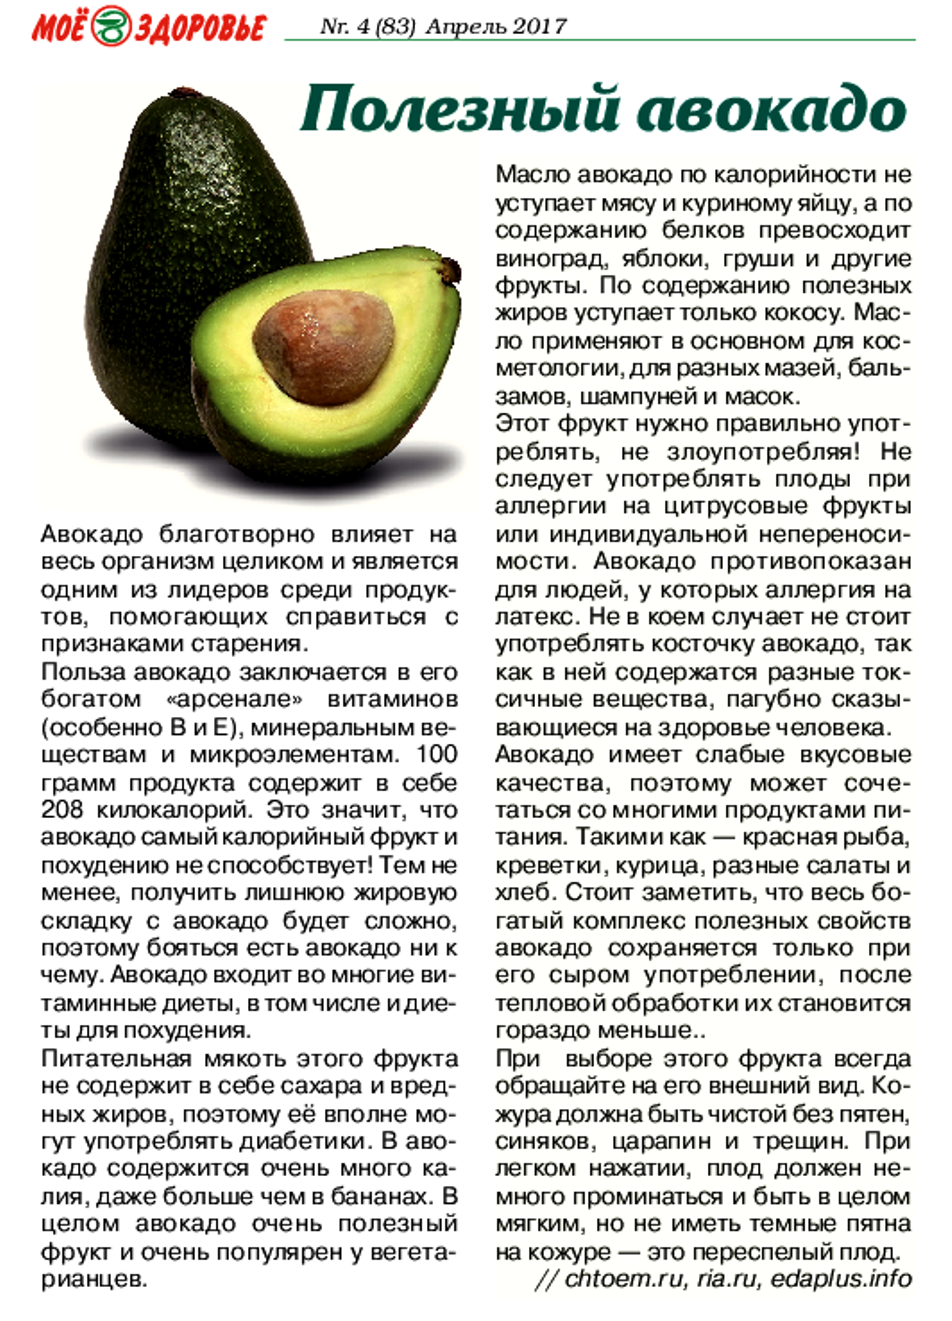 “авокадо: польза и вред для организма, калорийность и особенности”